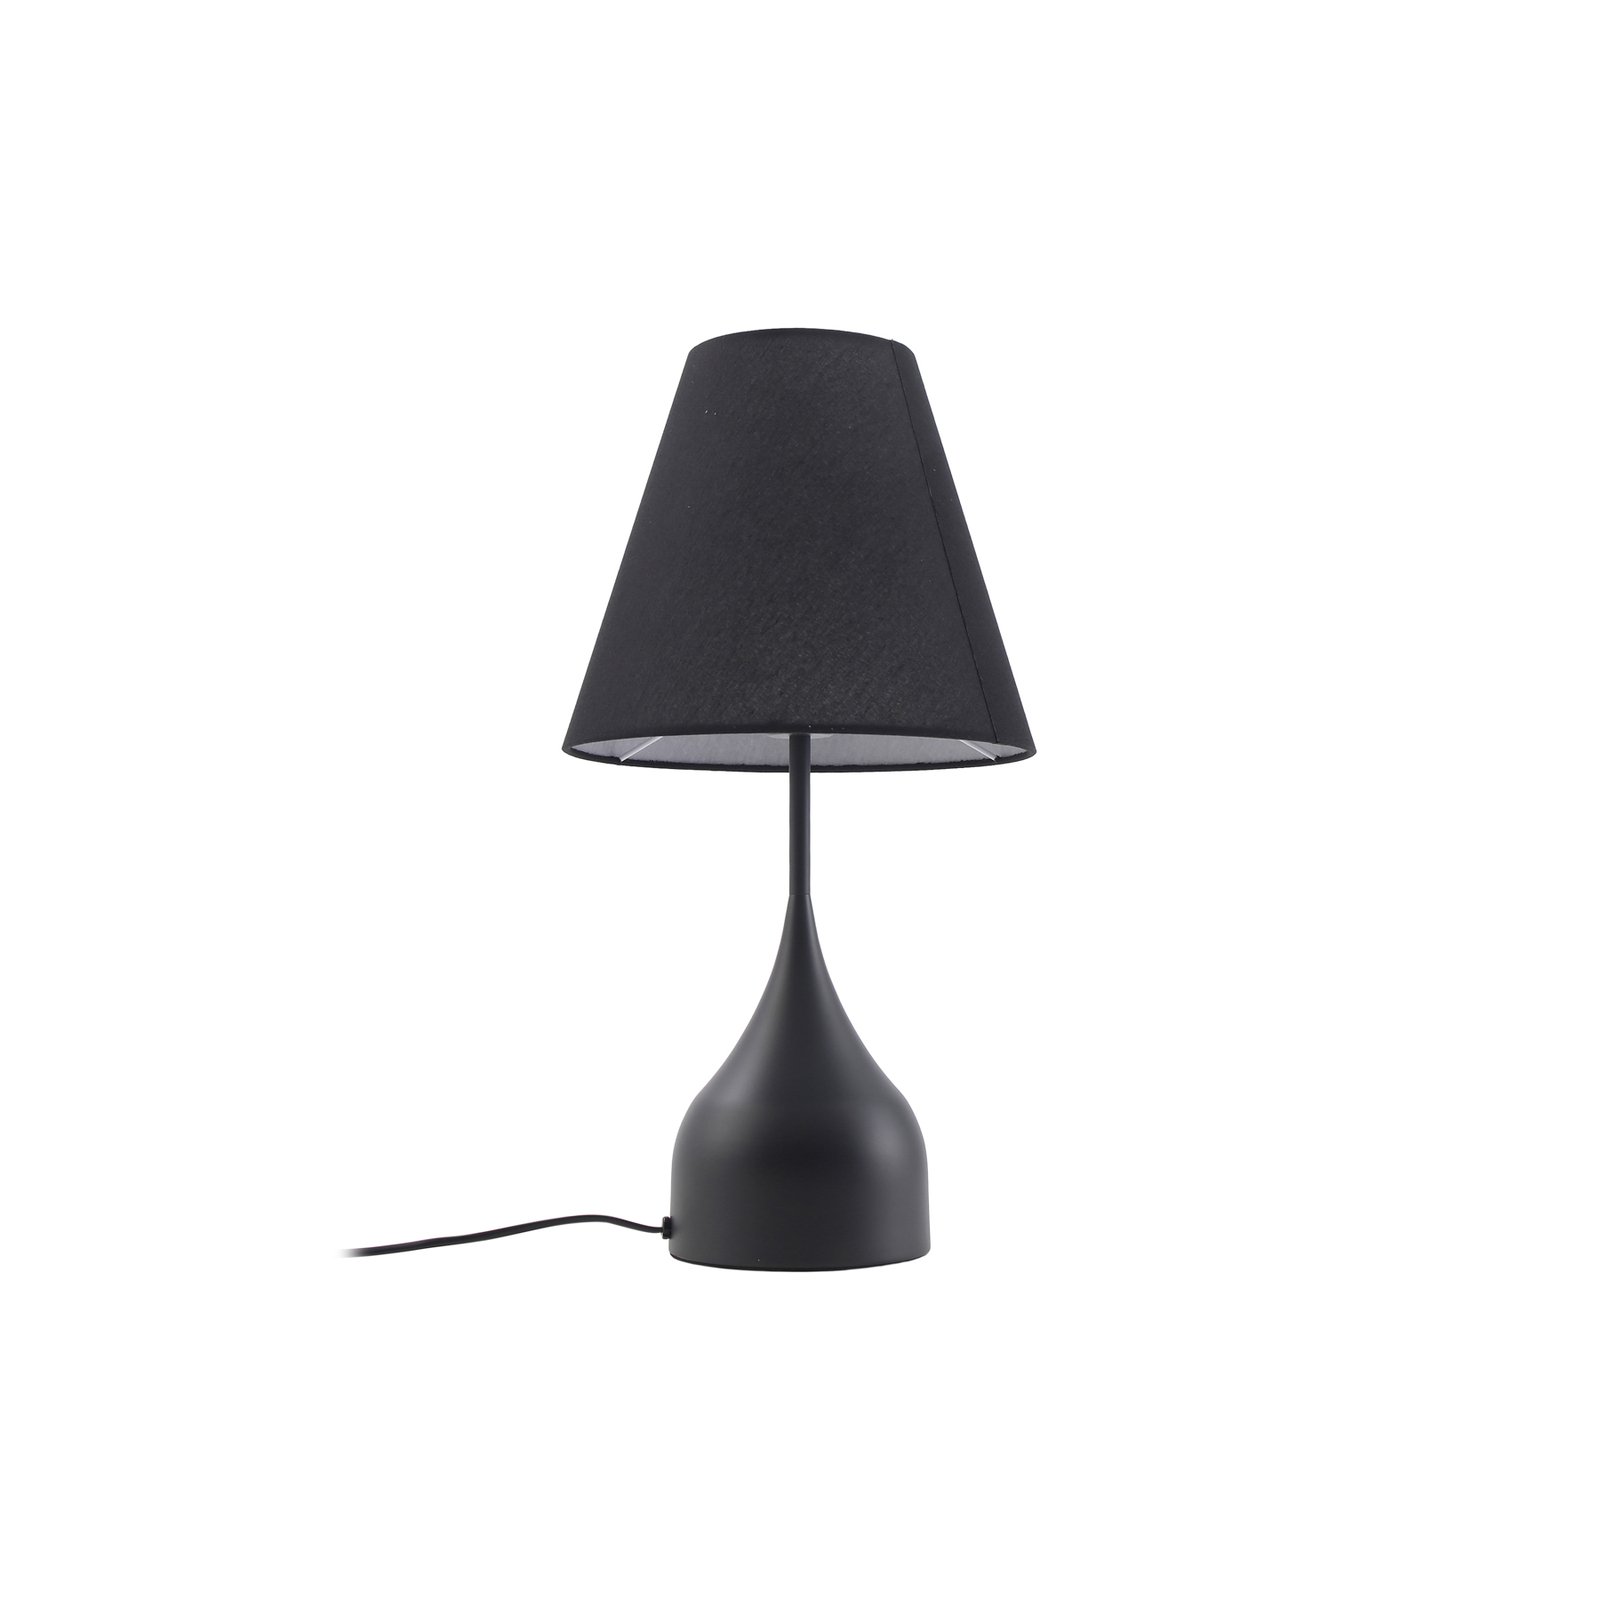 Lucande bordlampe Luoti, svart, tekstil, 57 cm høy